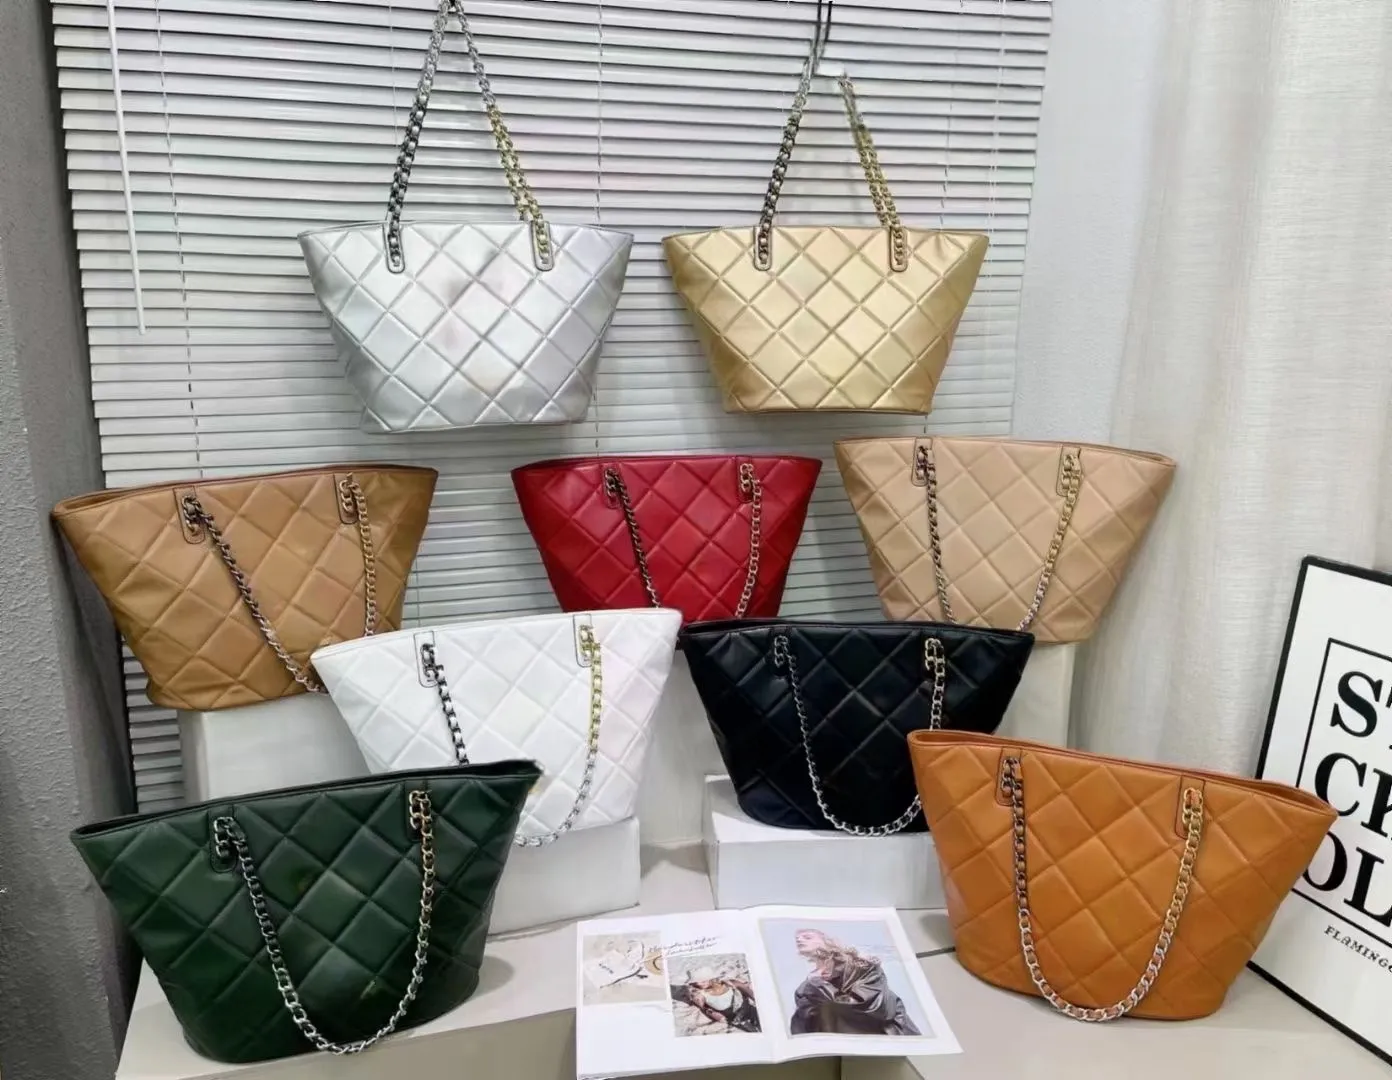 Chanel Crossbody Bag With Chain VIP Gift With Purchase (GWP) รุ่น Limited  (แอดไลน์ ก่อนสั่งซื้อ) - RisMa beauty จำหน่ายเครื่องสำอางไทยต่างประเทศ  กระเป๋าแบรนด์แท้ เสื้อผ้า ของใช้ในบ้าน : Inspired by LnwShop.com